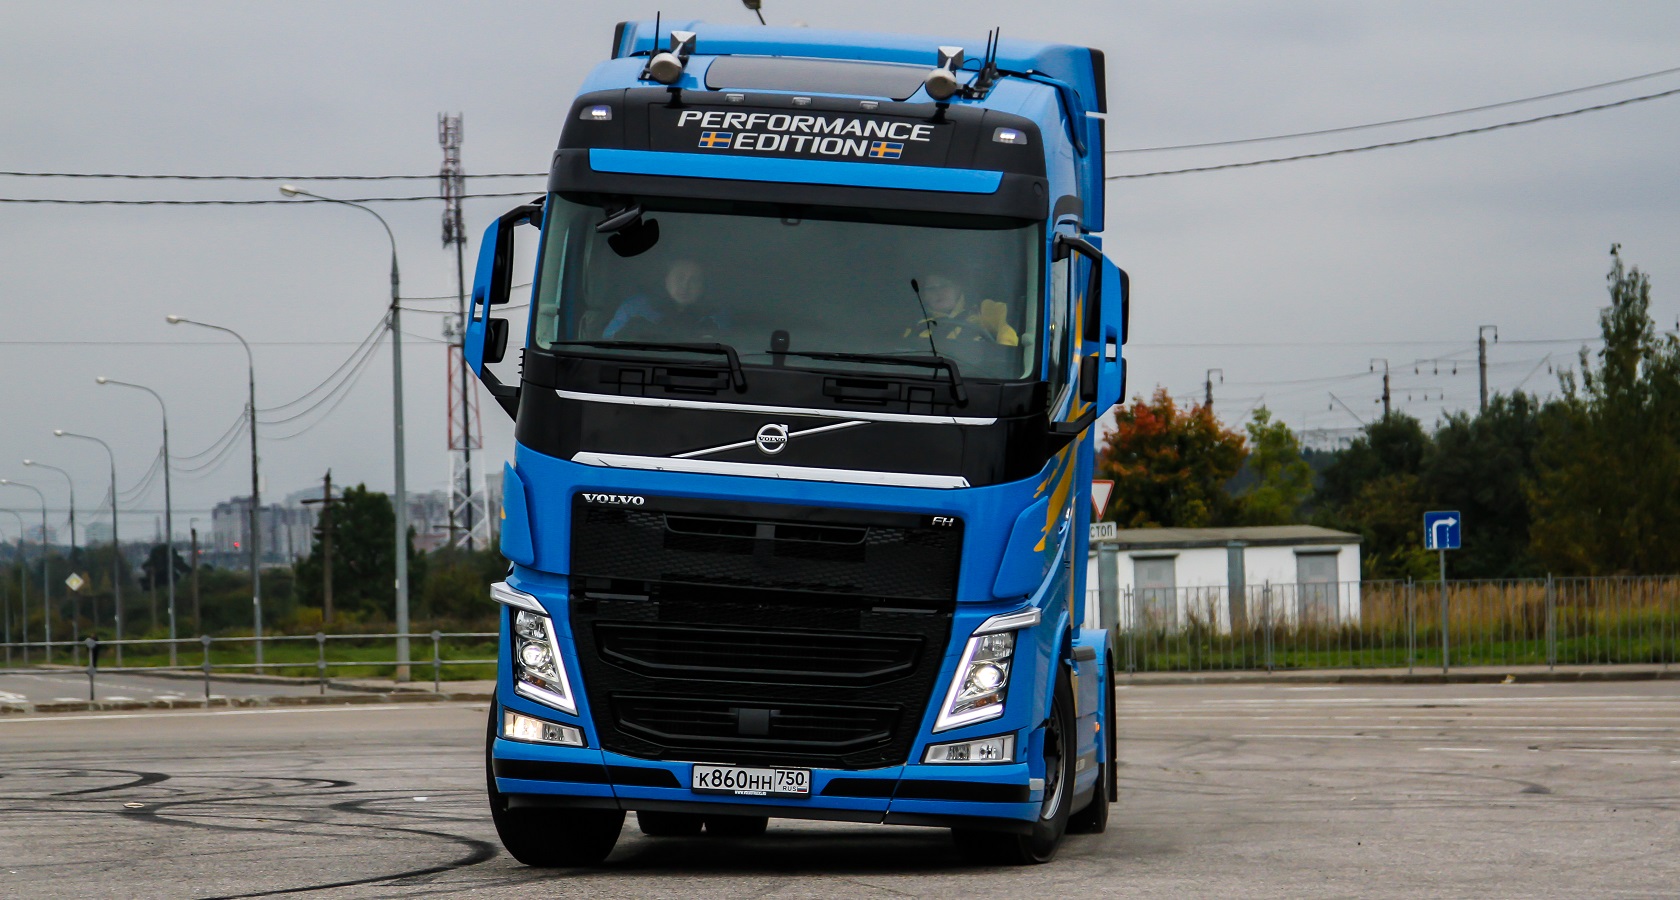 Самым продаваемым грузовым автомобилем в России по итогам месяца впервые стал Volvo FH (фото: Виталий Блинушов)